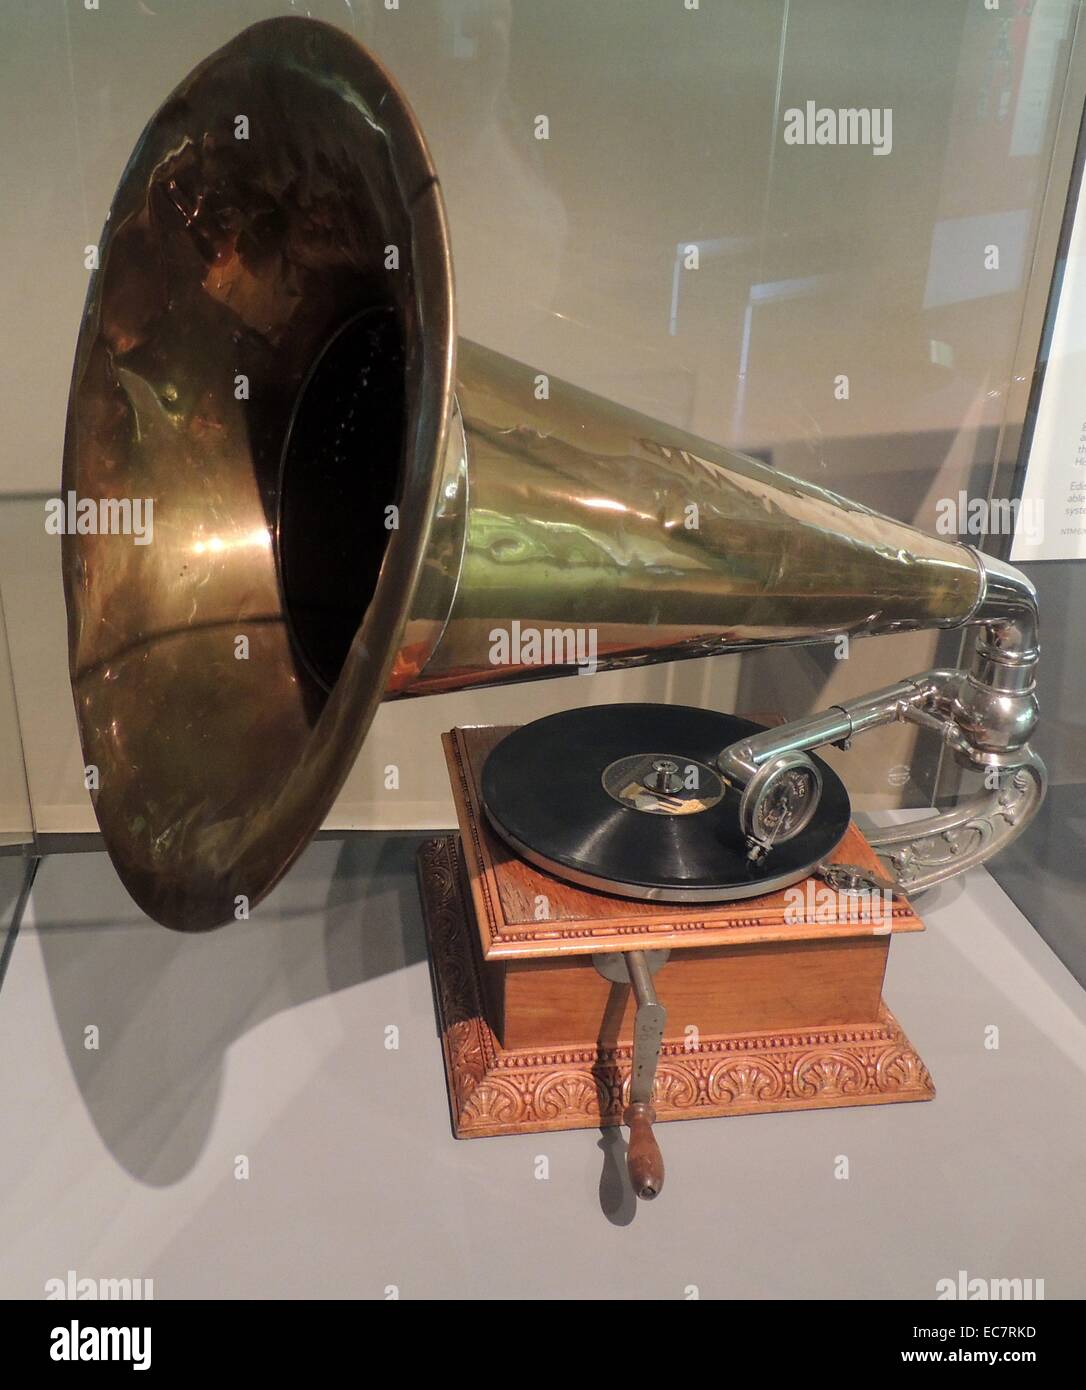 Die Berliner Gramophone für Cinema Sound verwendet. Das grammophon wurde von der Norwegischen Film Pionier und Kino Direktor, Hugo Hermansen besaß. Schallplattenwiedergabegeräte wurden in den frühesten Kinos verwendet Stummfilme zu begleiten. Stockfoto